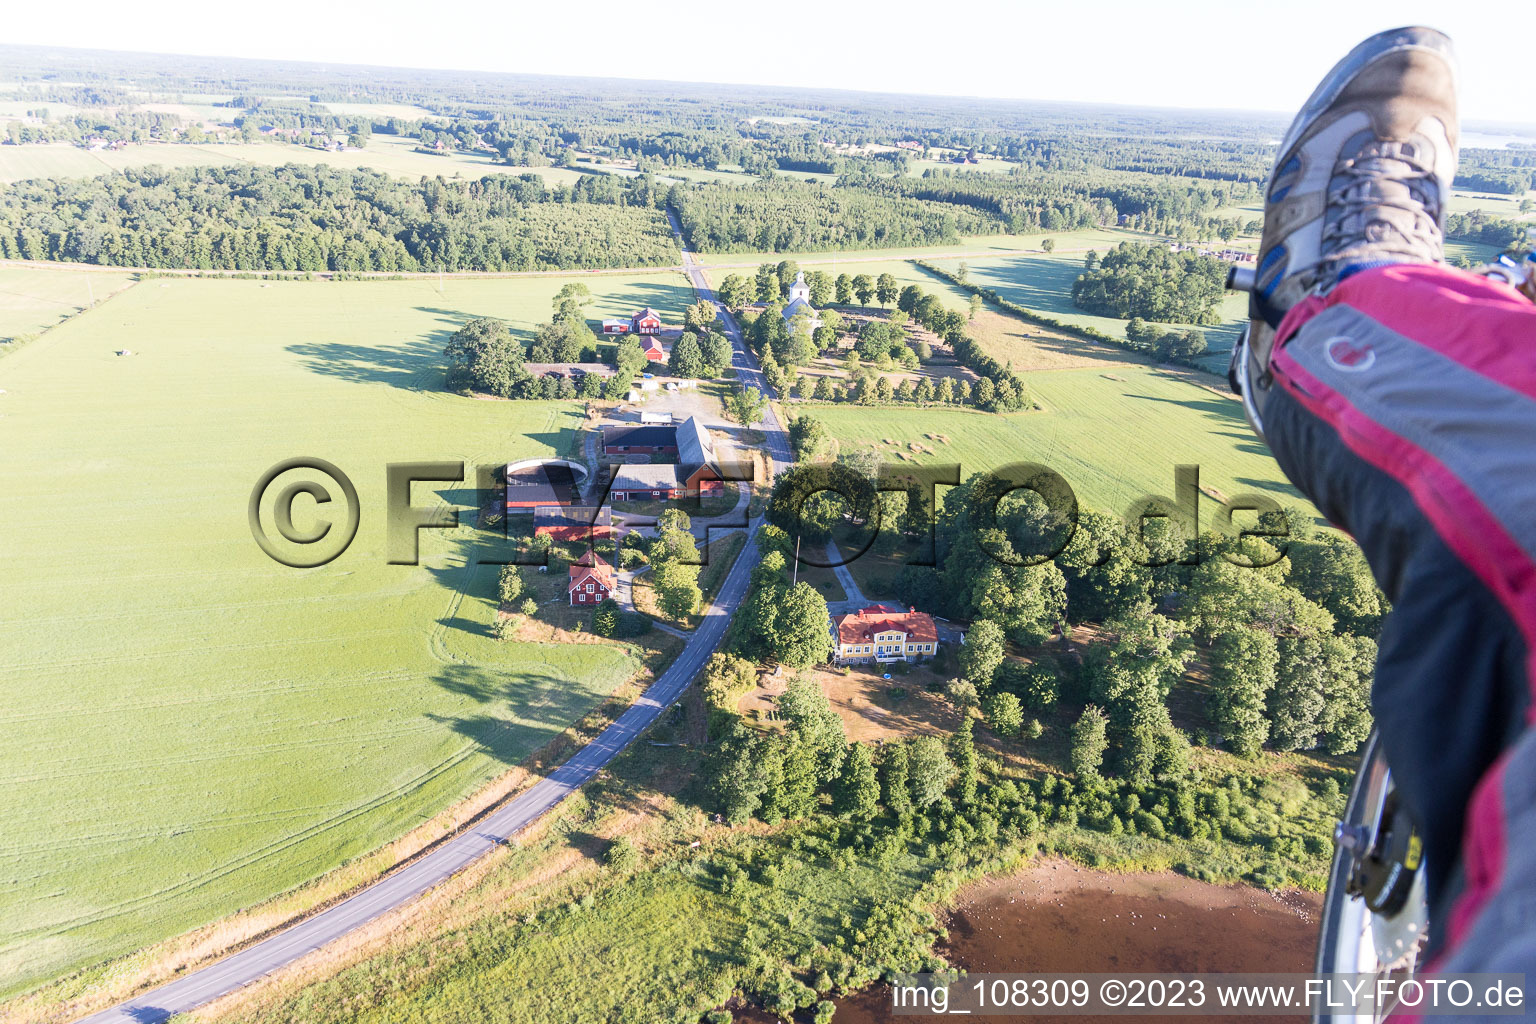 Skatelöv im Bundesland Kronoberg, Schweden aus der Luft betrachtet